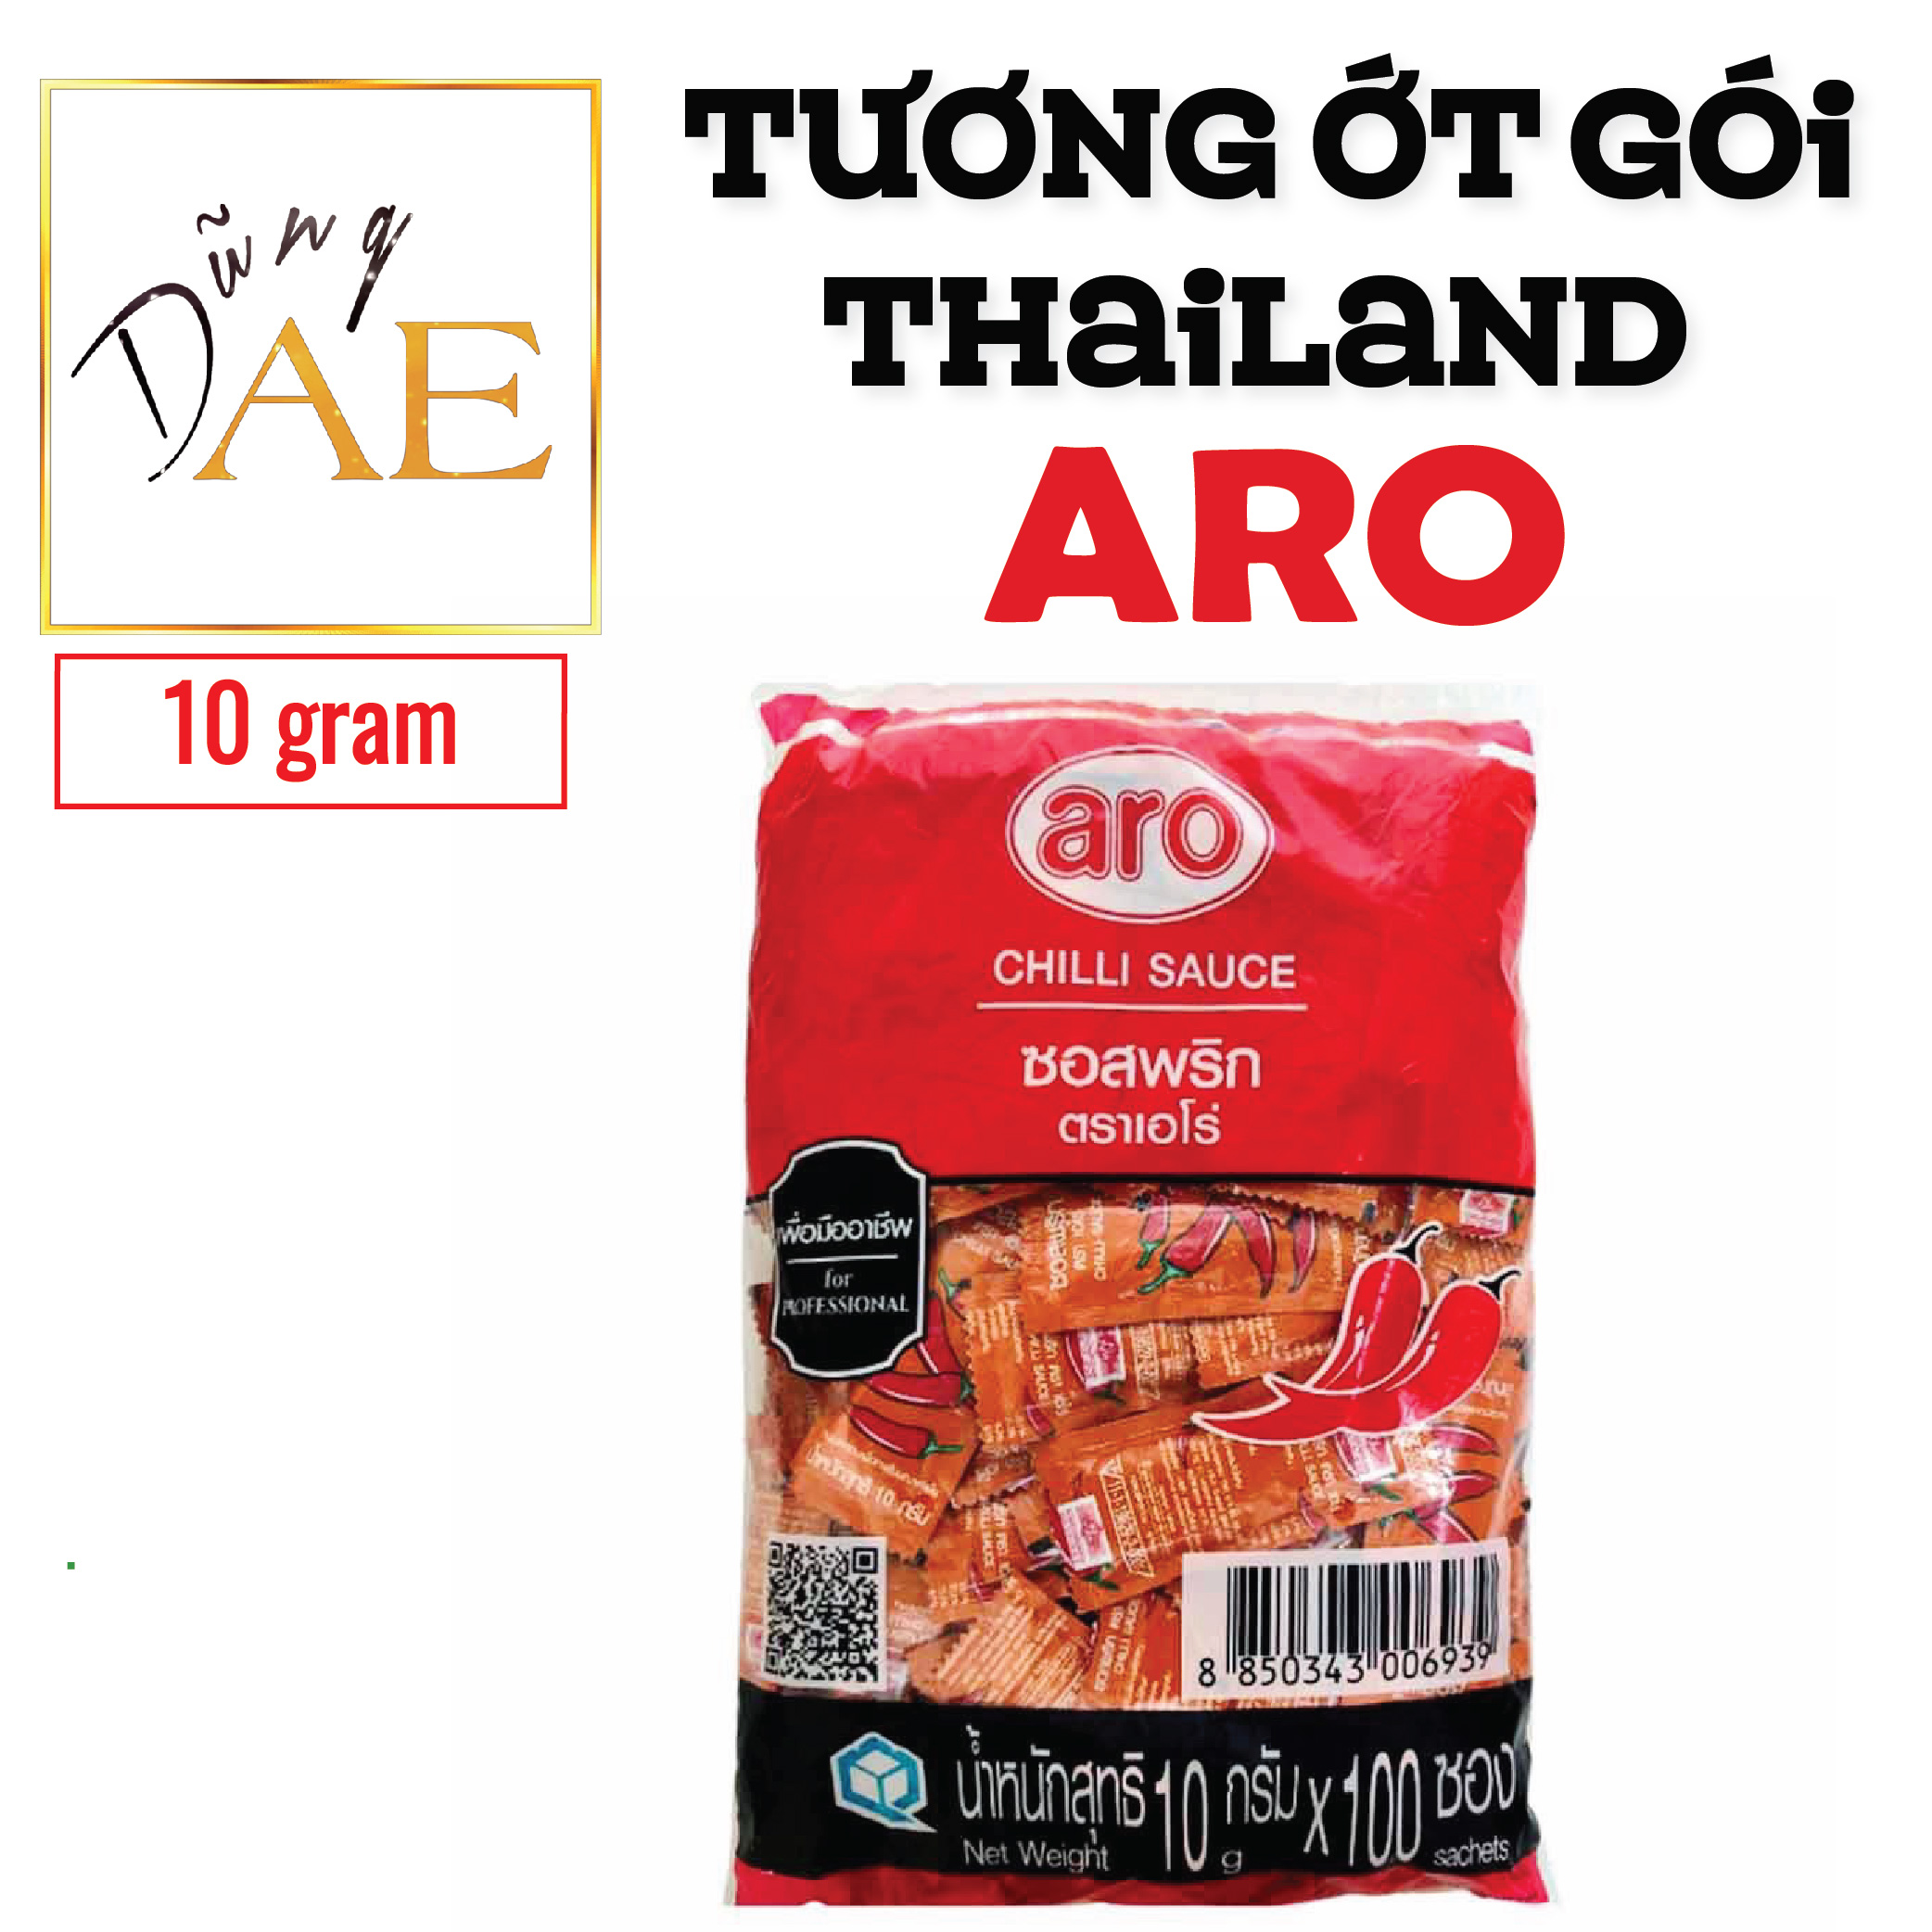 Tương Ớt Gói Aro Thái Lan Tiện Lợi Mang Đi Du Lịch - Aro Chilli Sauce 10g